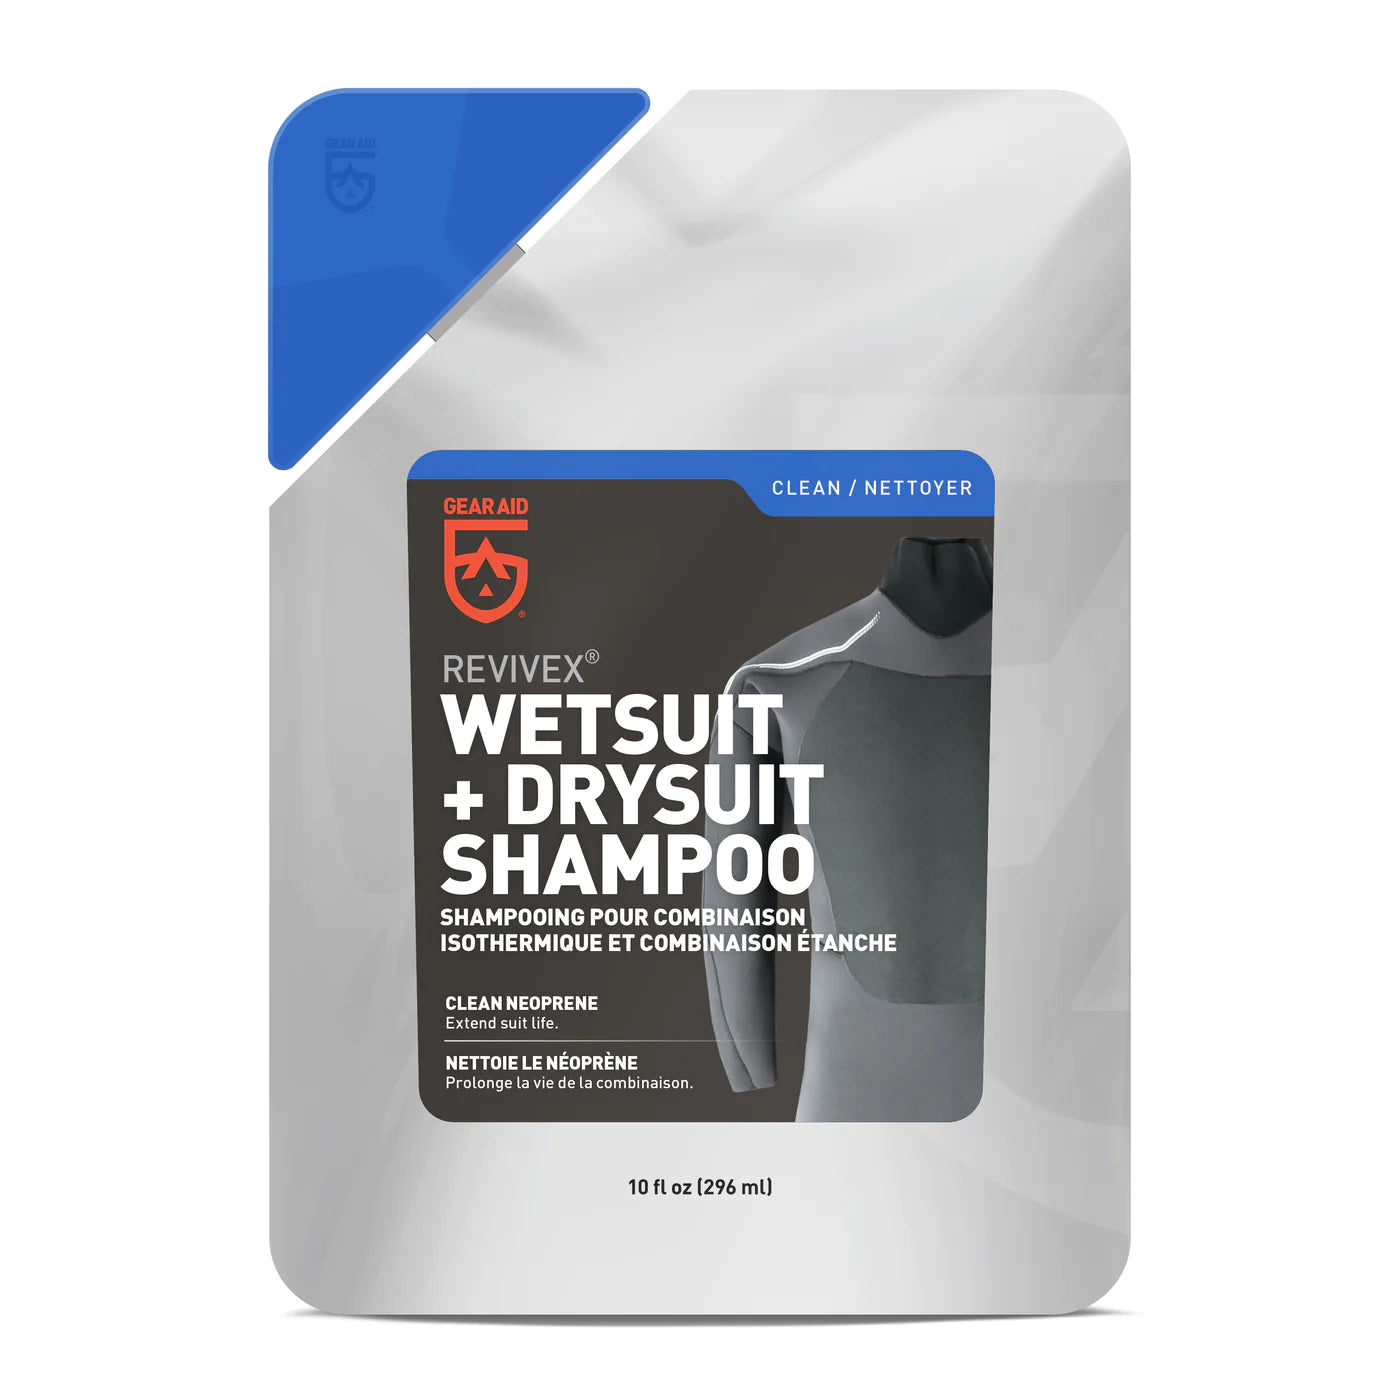 Revivex Wetsuit Shampoo